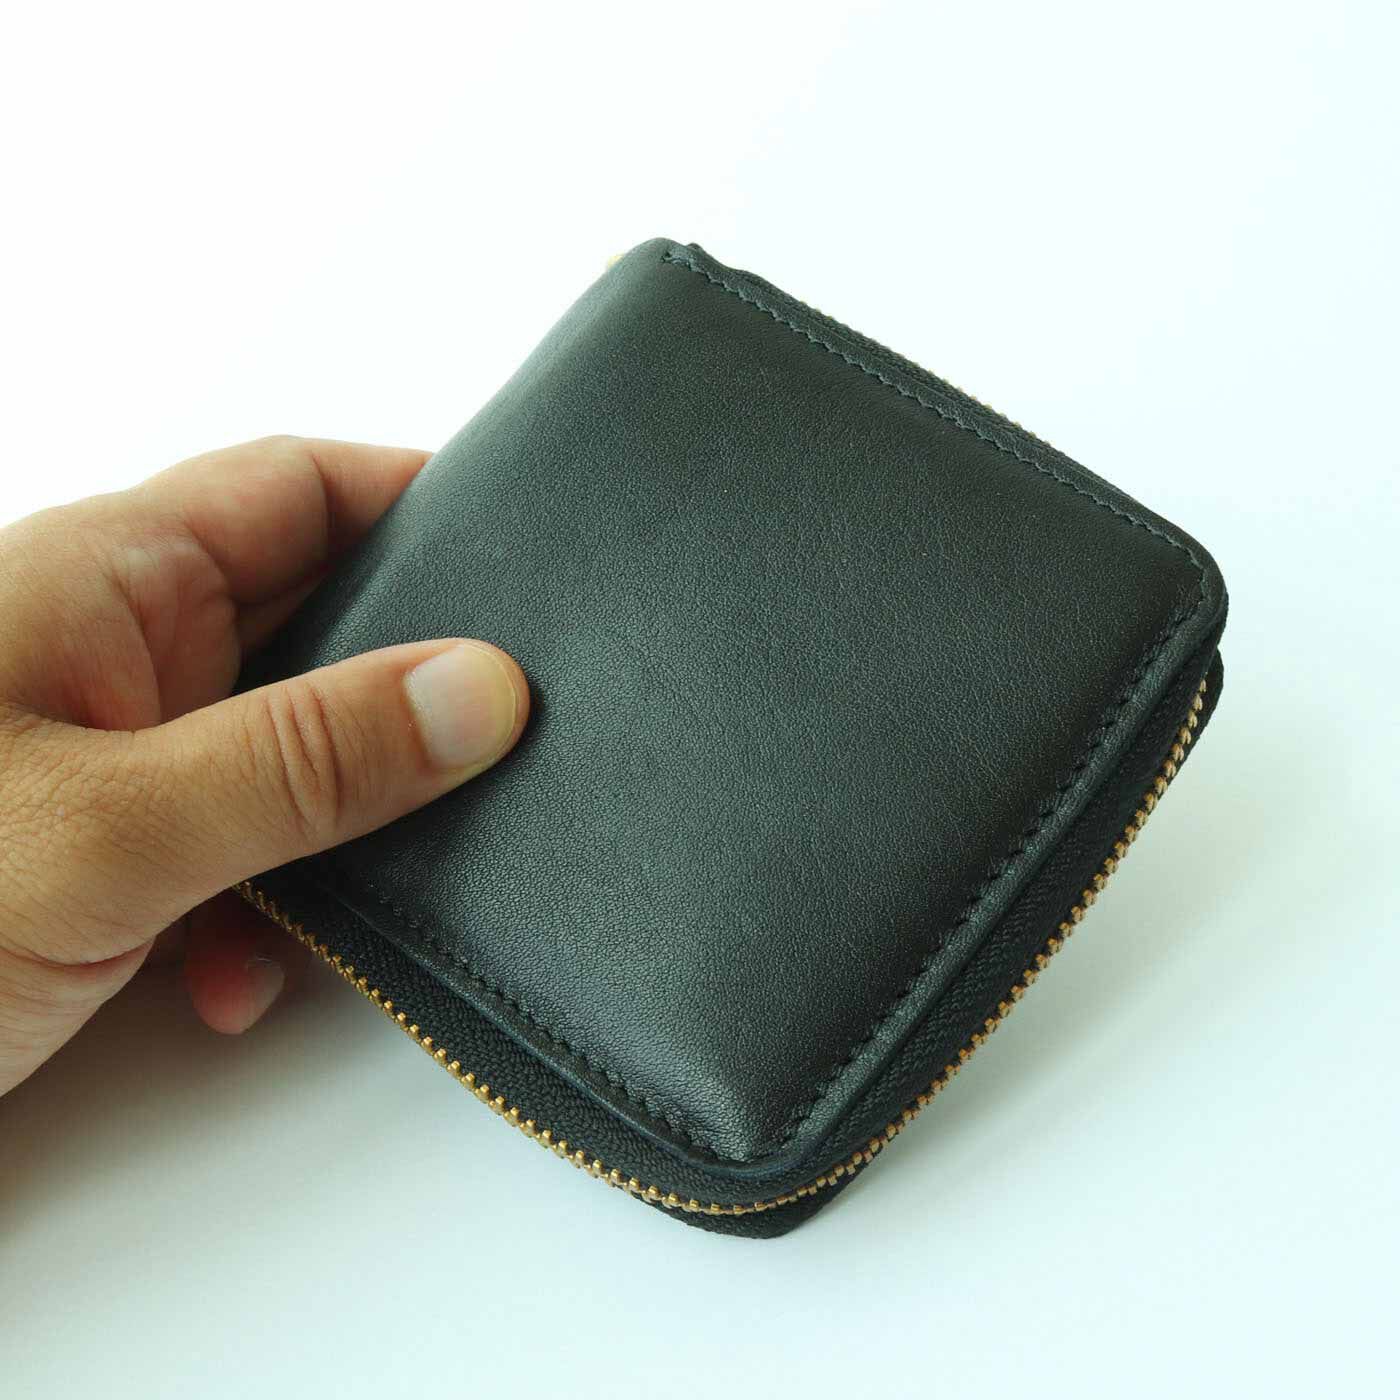 ＆Stories|福岡の鞄作家と作った 職人本革のラウンドジップ折り財布〈ブラック〉|このラウンドジップ折り財布は、やわらかく、もちっとした手ざわりを追求。ほどよい収納量で、スマートに使えます。バッグの中でもかさばらず、必要なものがコンパクトに収納できるサイズ感。